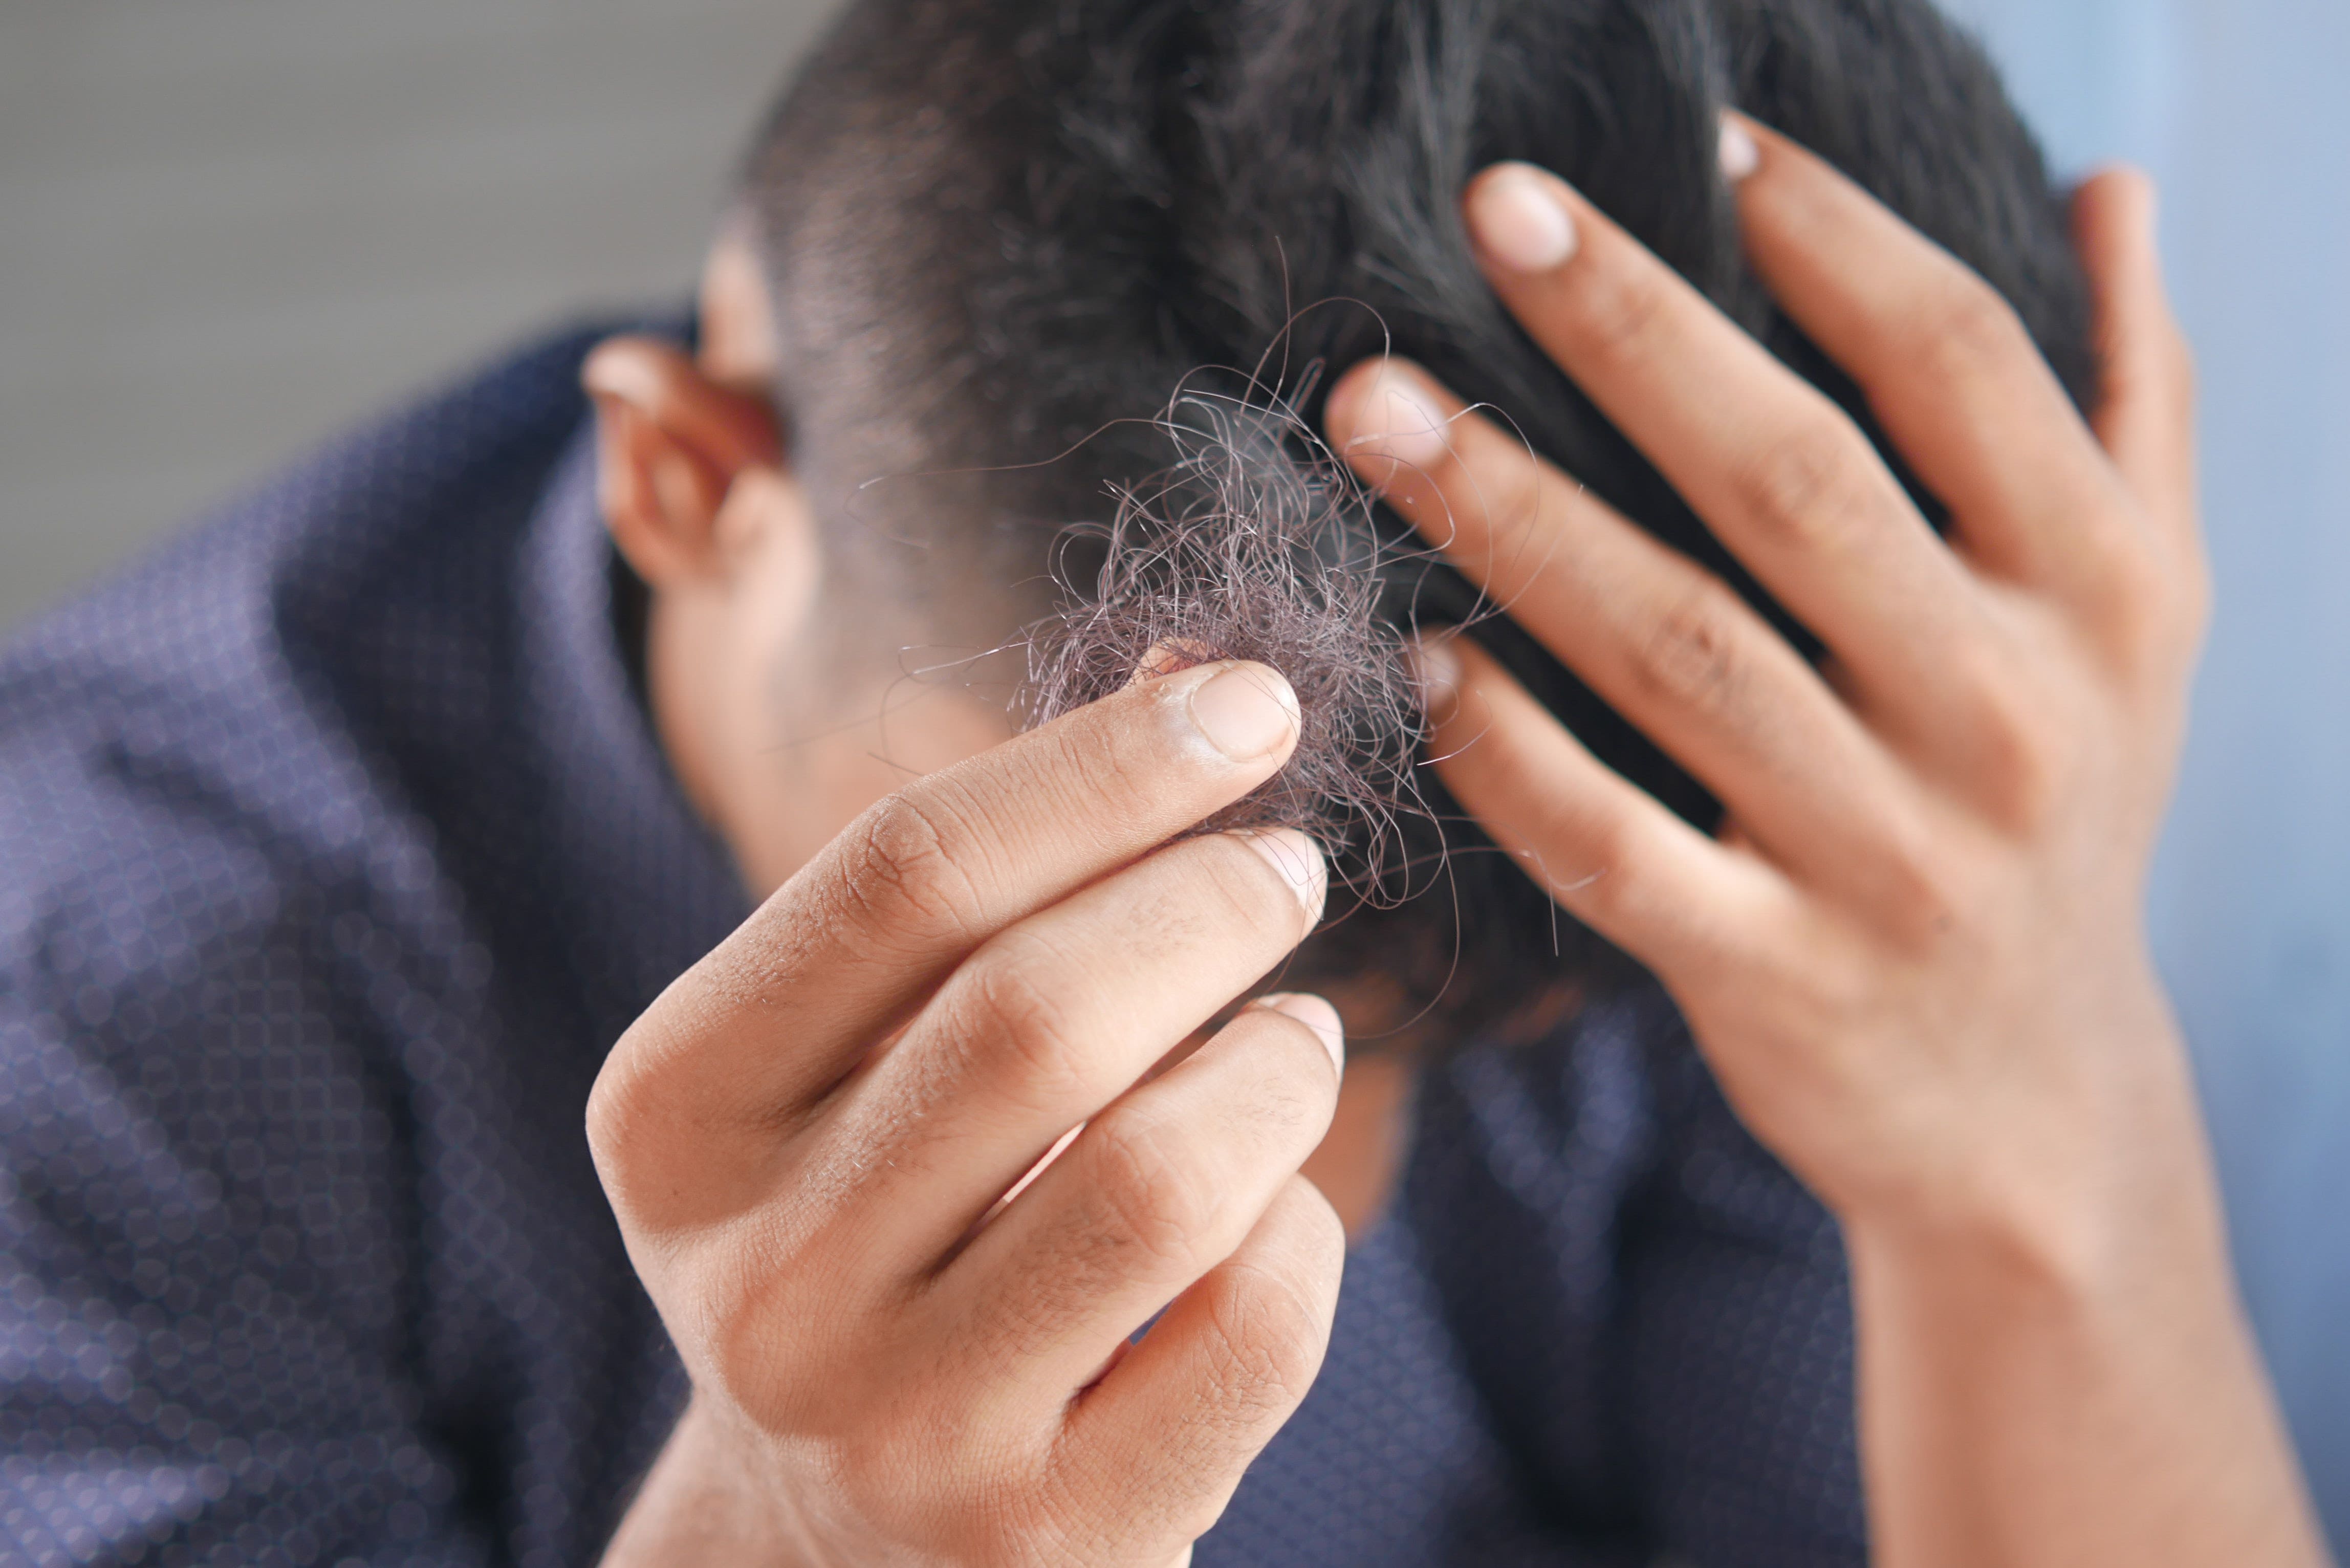 Hair Thinning? Britannia Life Sciences Launches CBD Trial For Hair Loss Treatment